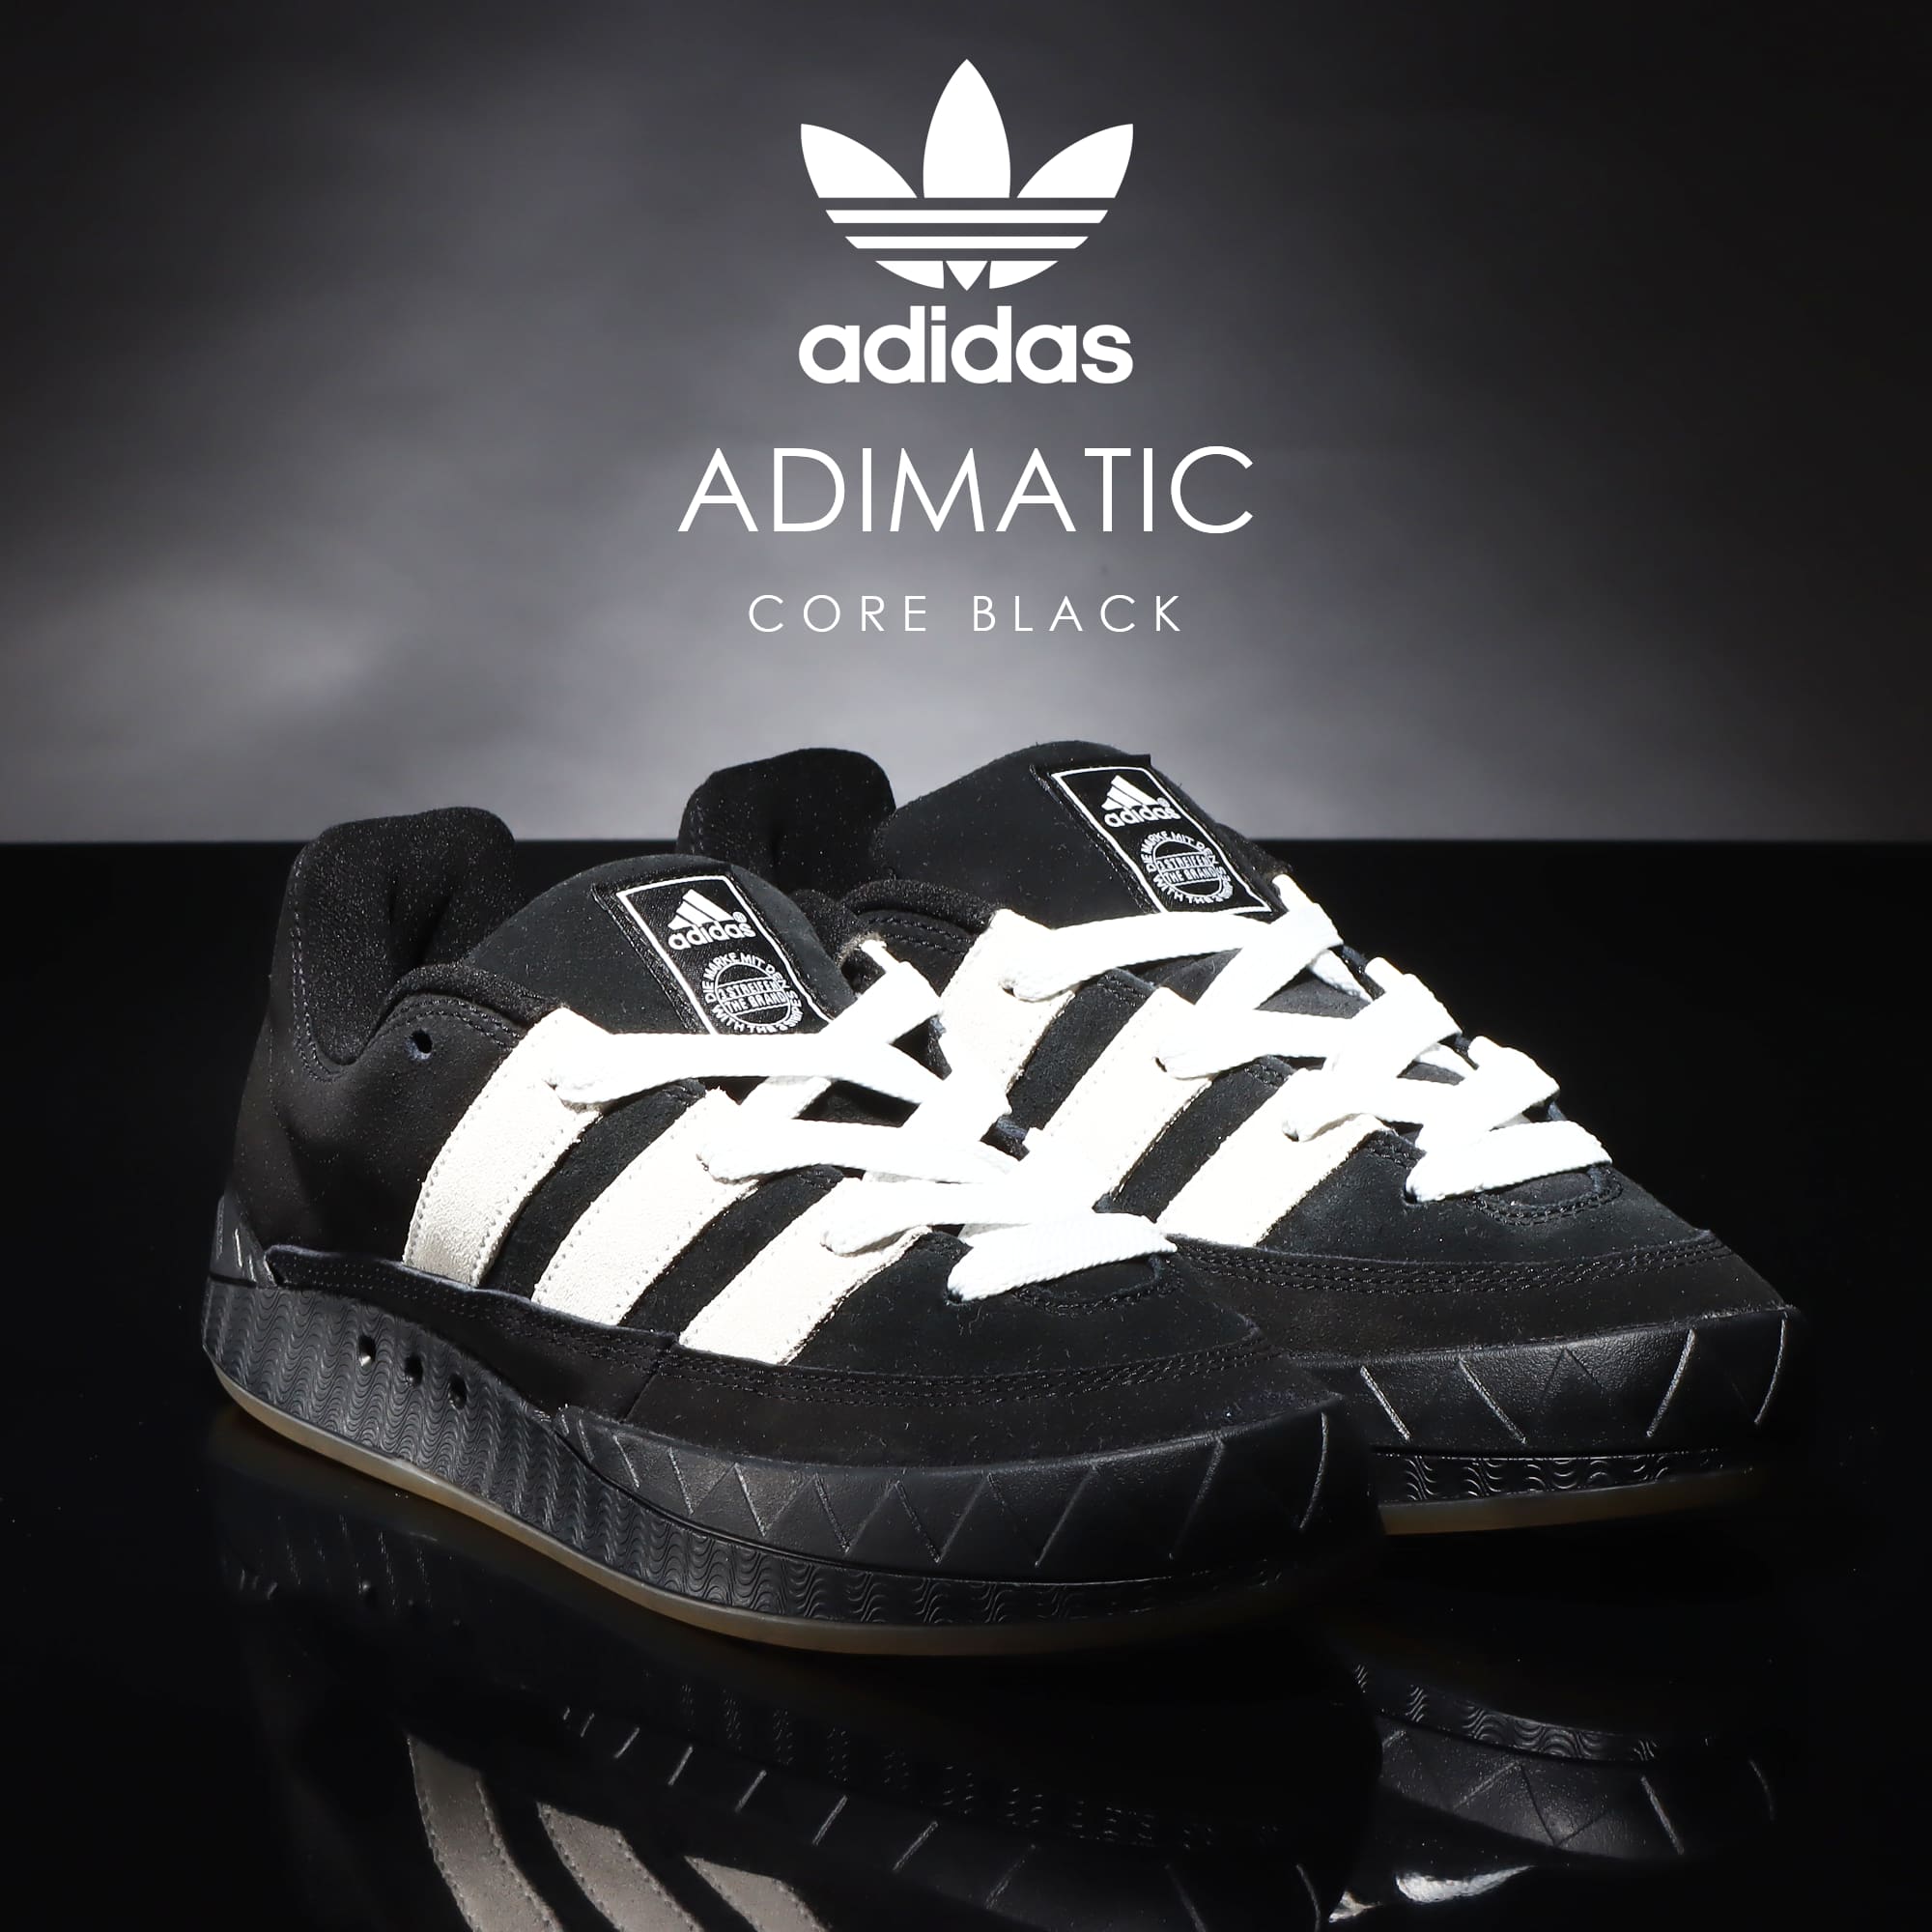 adidas Originals Adimatic "Core Black"